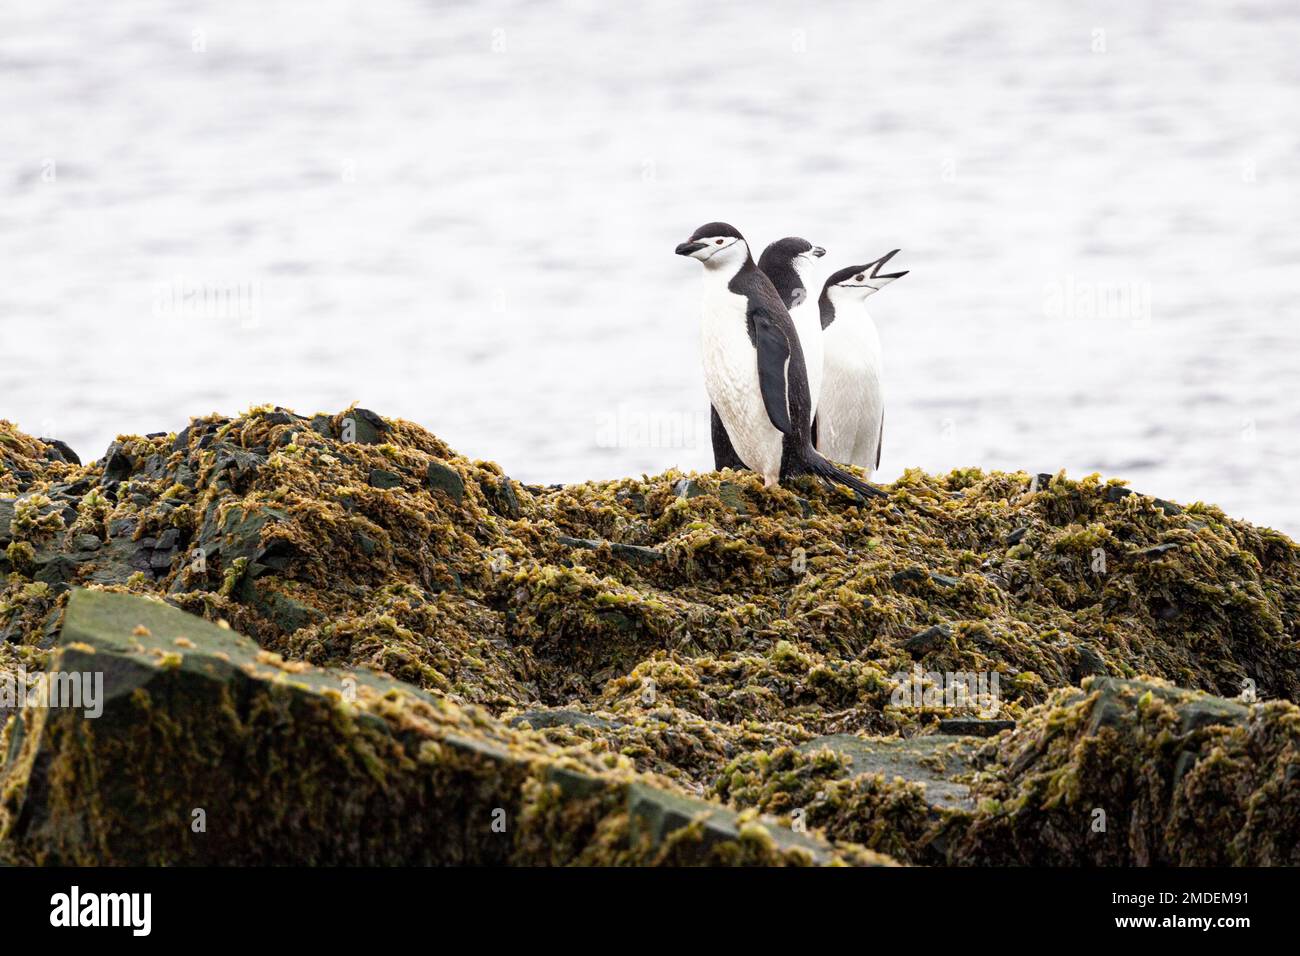 Trois pingouins de Chinstrap (Pygoscelis antarcticus) se dressent ensemble sur une grande roche recouverte d'algues lors d'un jour sombre dans l'Antarctique. Banque D'Images